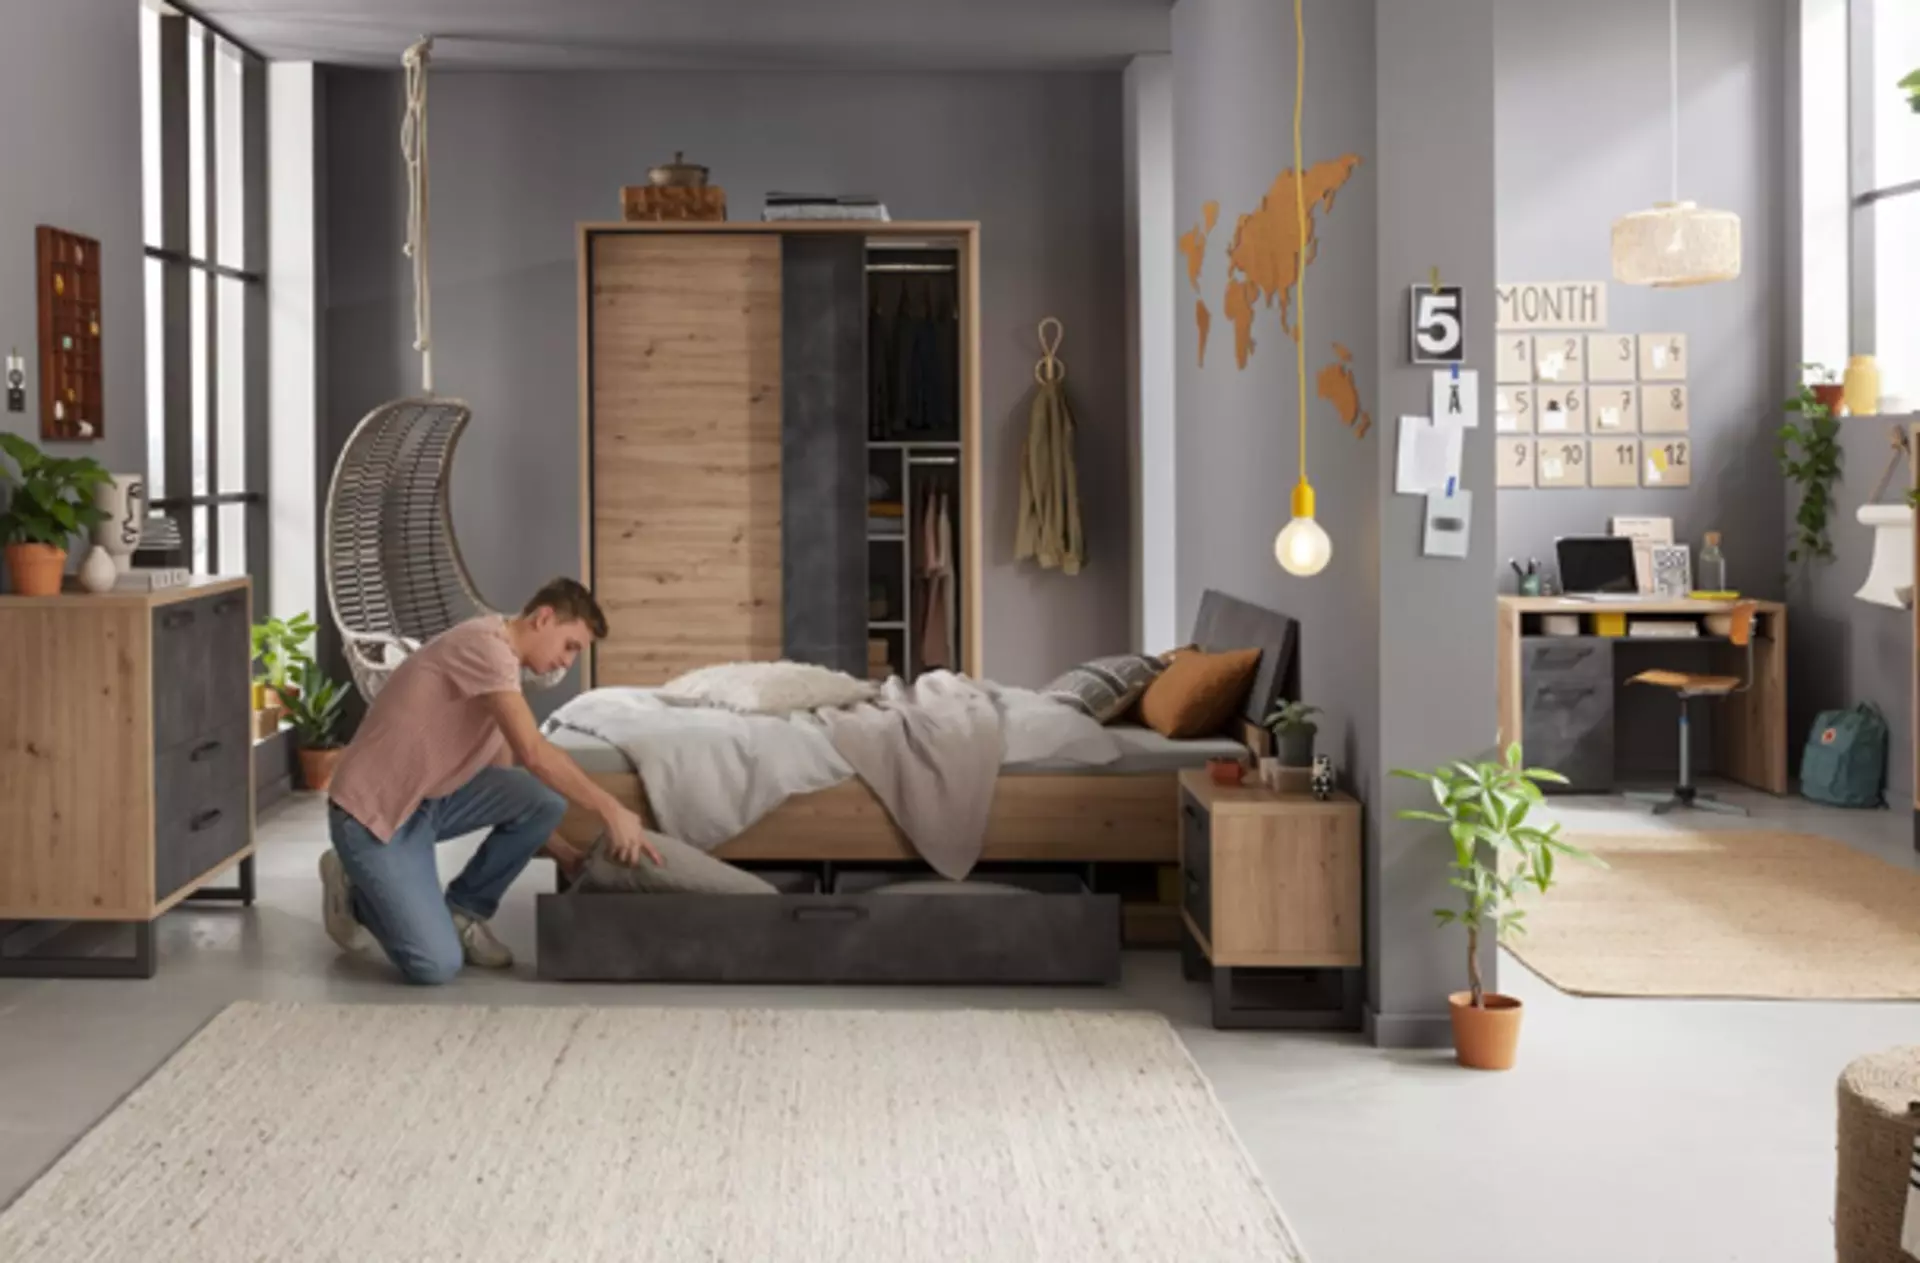 Milieubild zu "Gästezimmer" mit Möbeln in Grau und Holz.